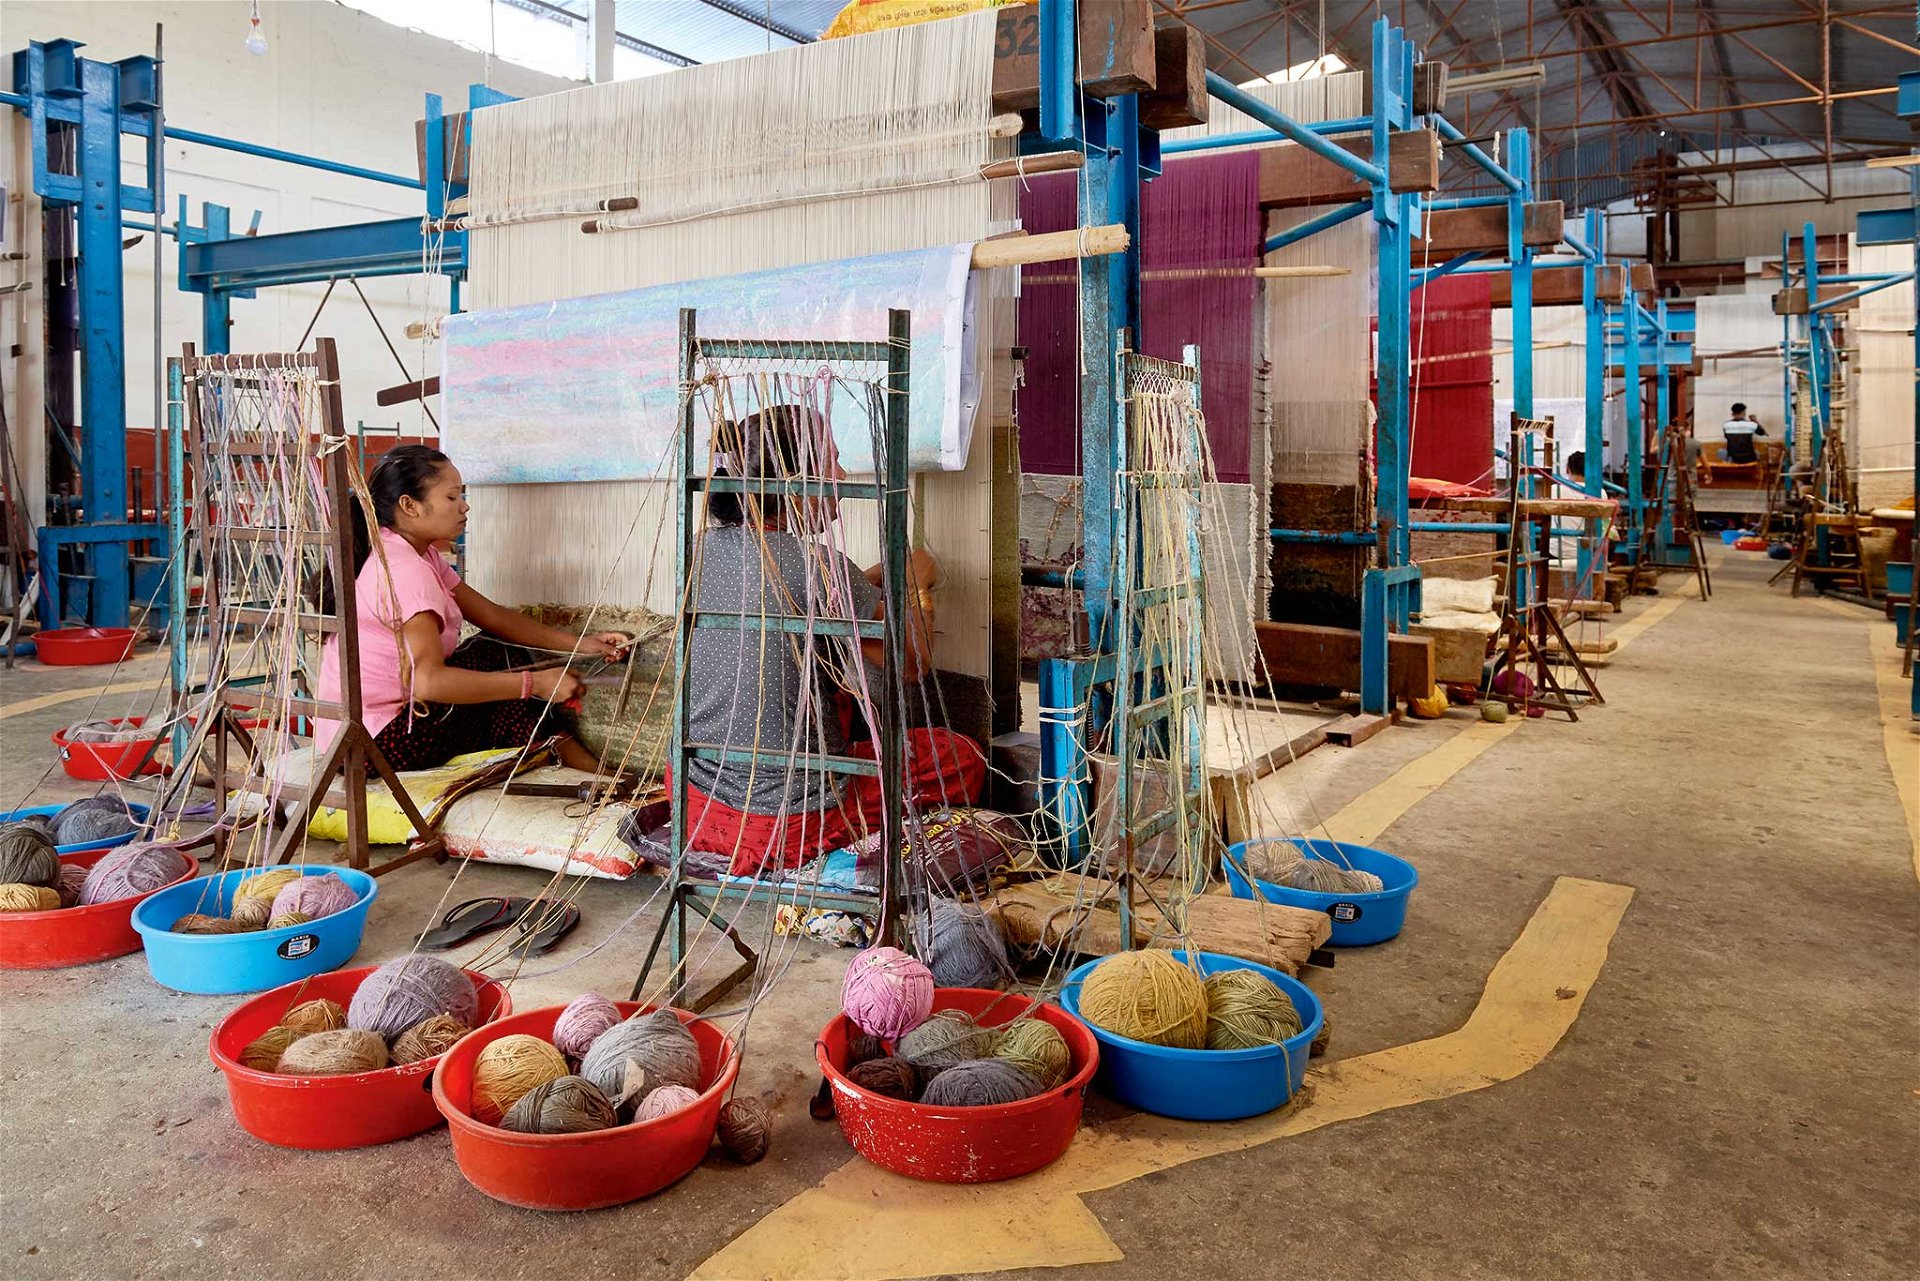 Nepal-Impressionen: Nepalesische Frauen beim Knüpfen der Teppiche. Meistens arbeiten sie noch in familiengeführten Betrieben.